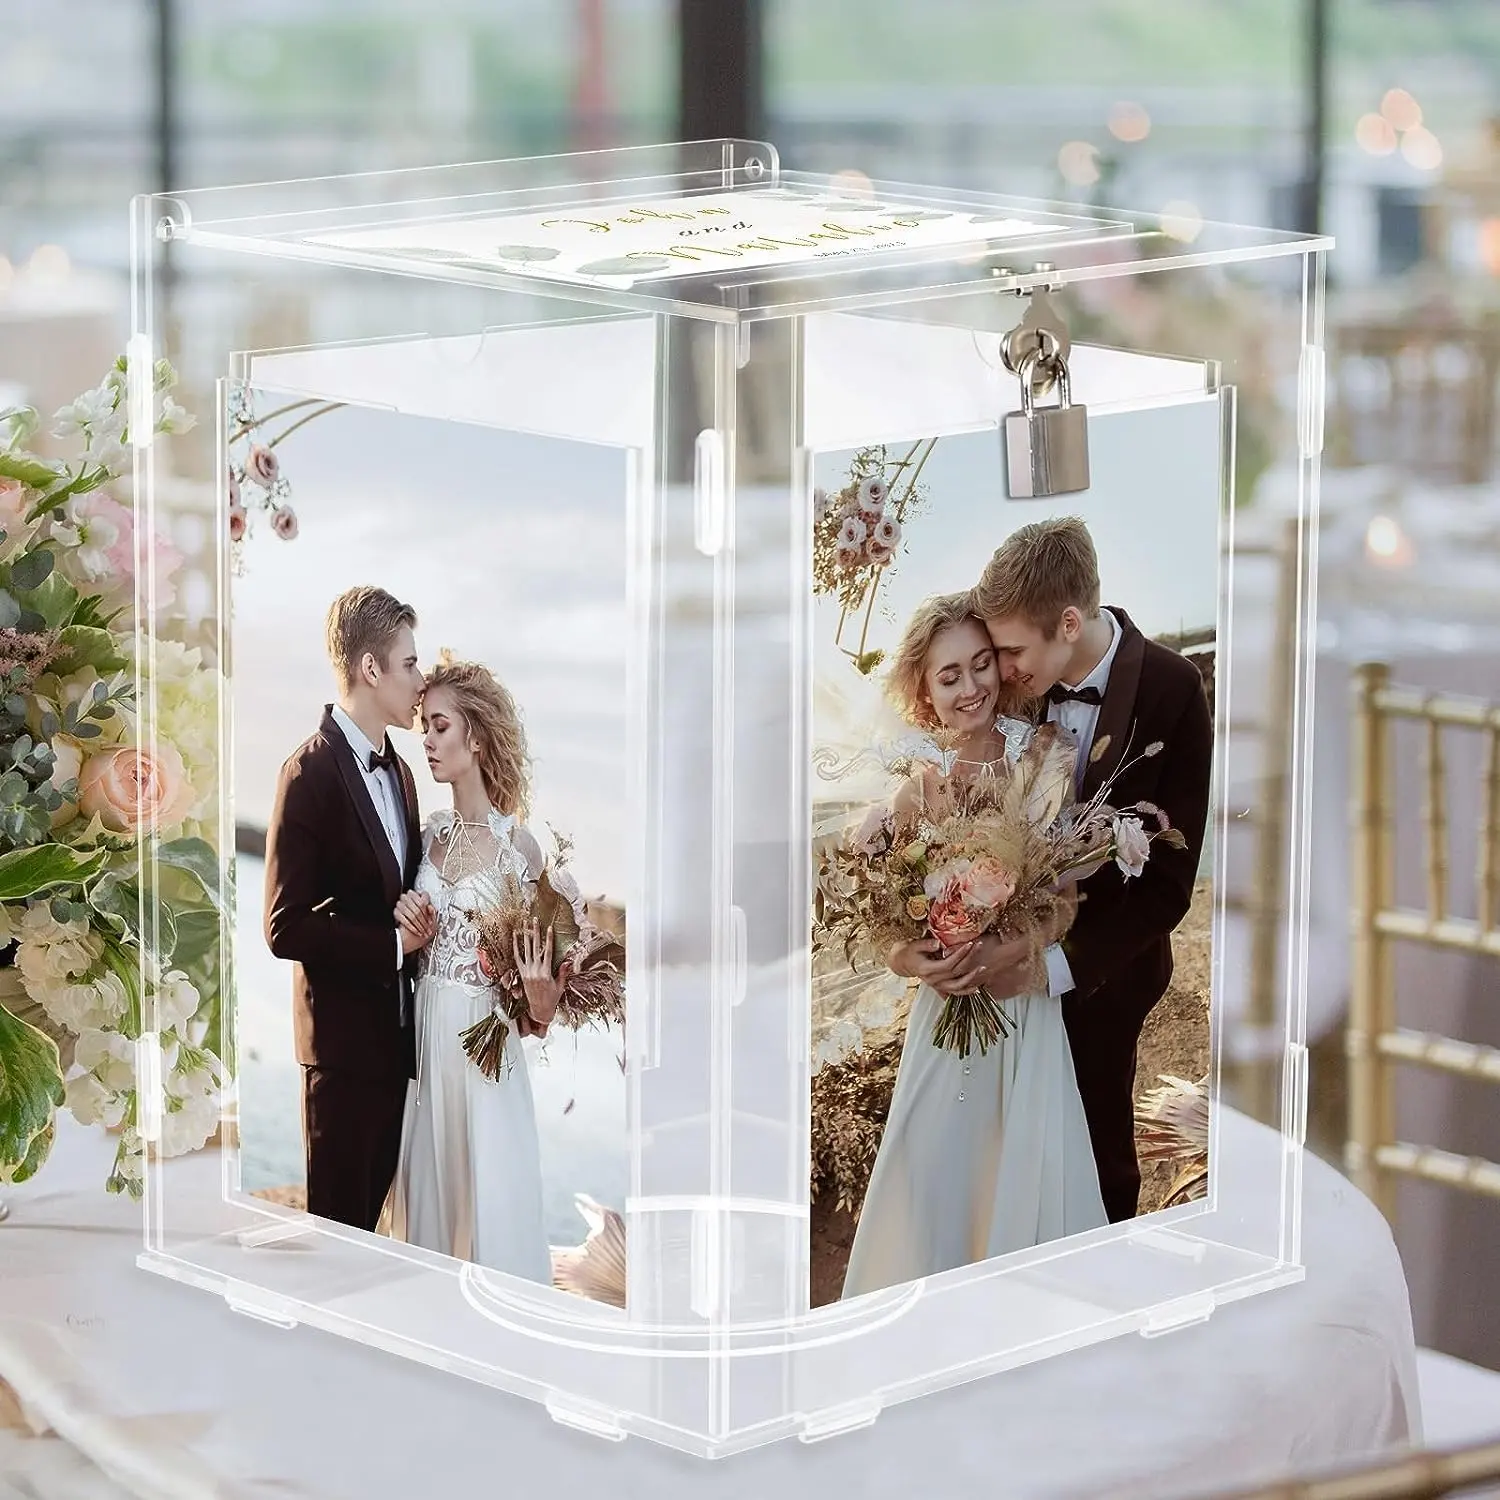 Düğün resepsiyon için resim çerçevesi ile akrilik evlilik davetiyesi kutu büyük dönebilir para zarf kartı kutu tutucu kilidi ile